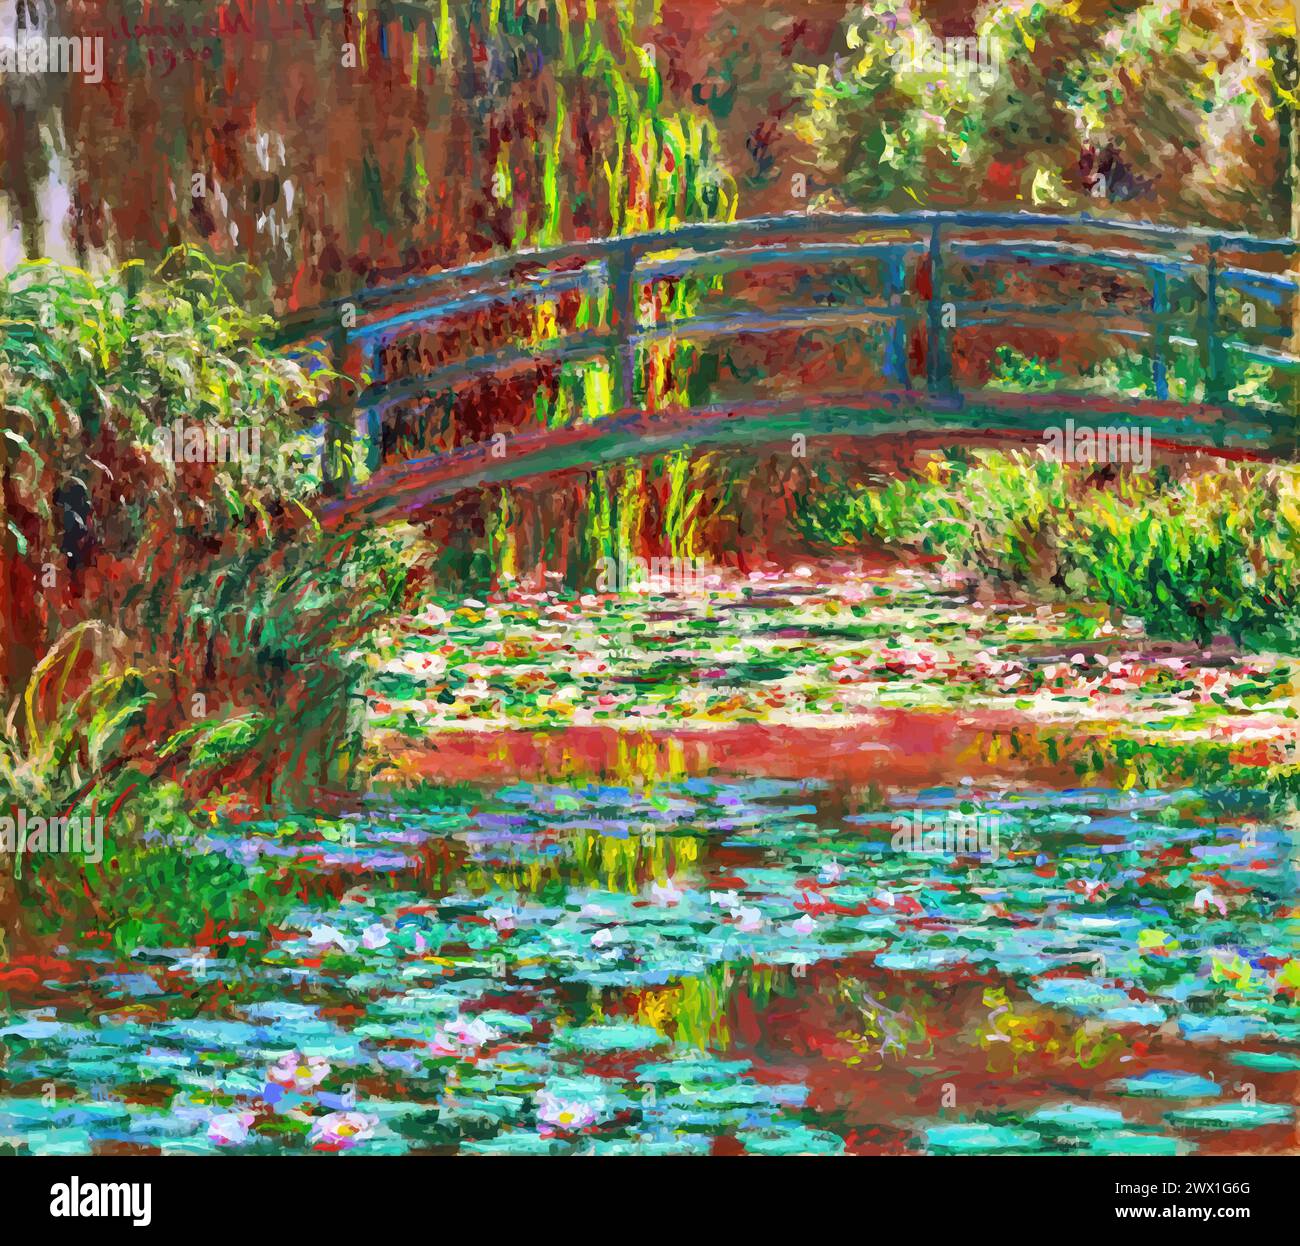 Water Lily Pond, 1900 (Pittura) dell'artista Monet, Claude (1840-1926) francese. Illustrazione Vettoriale